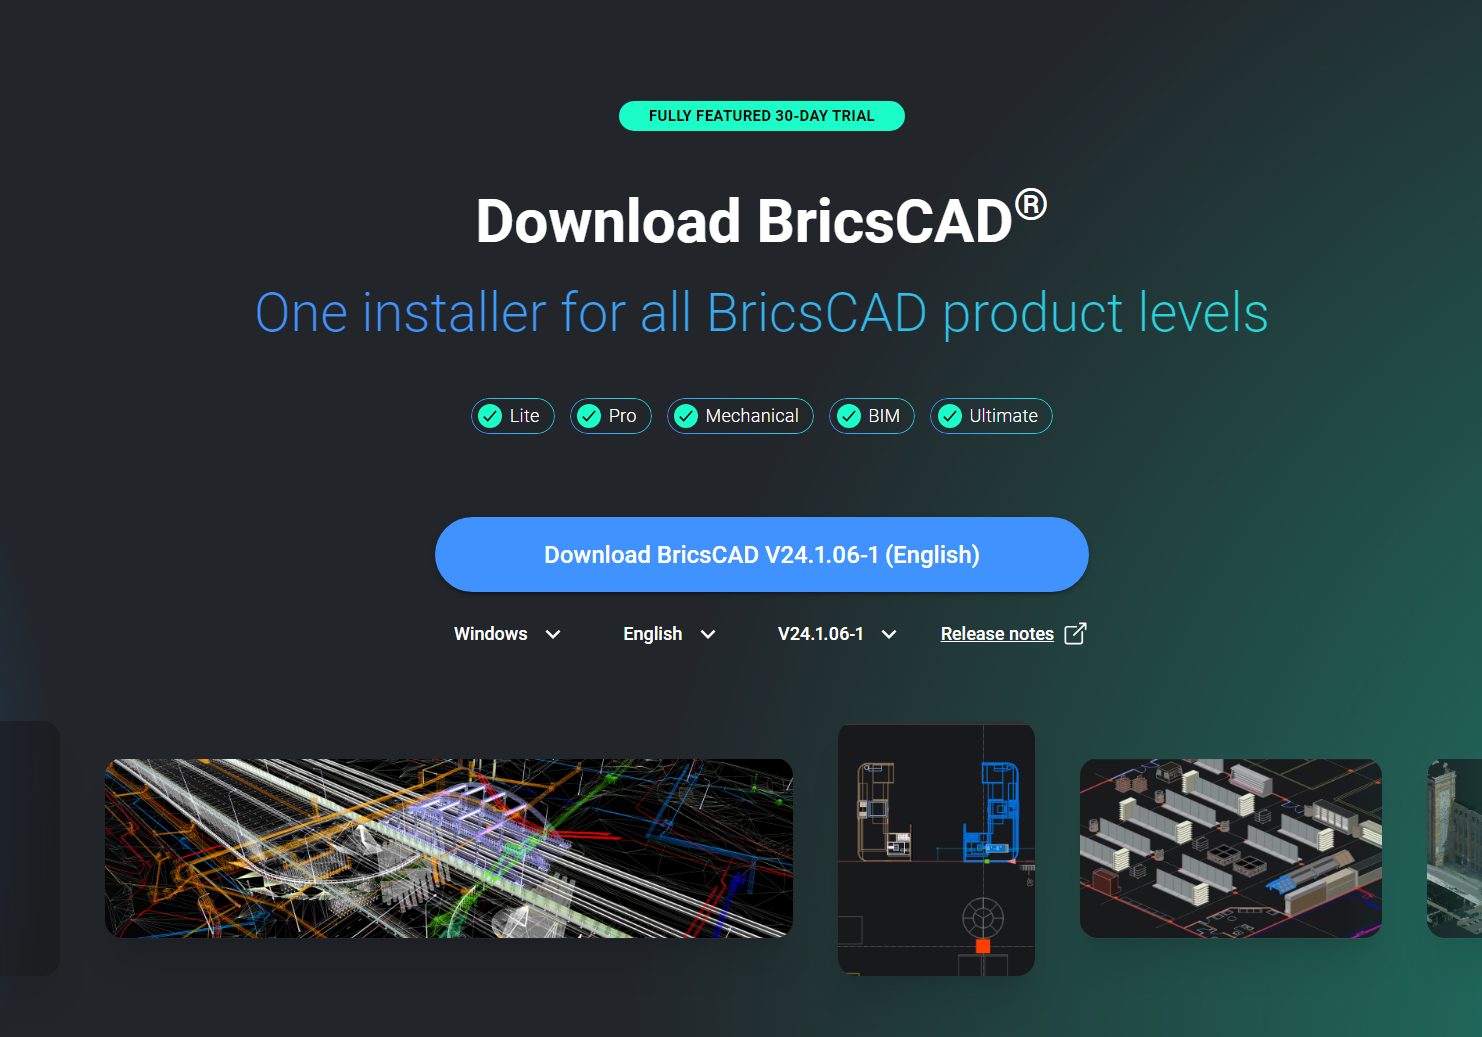 Download BricsCAD